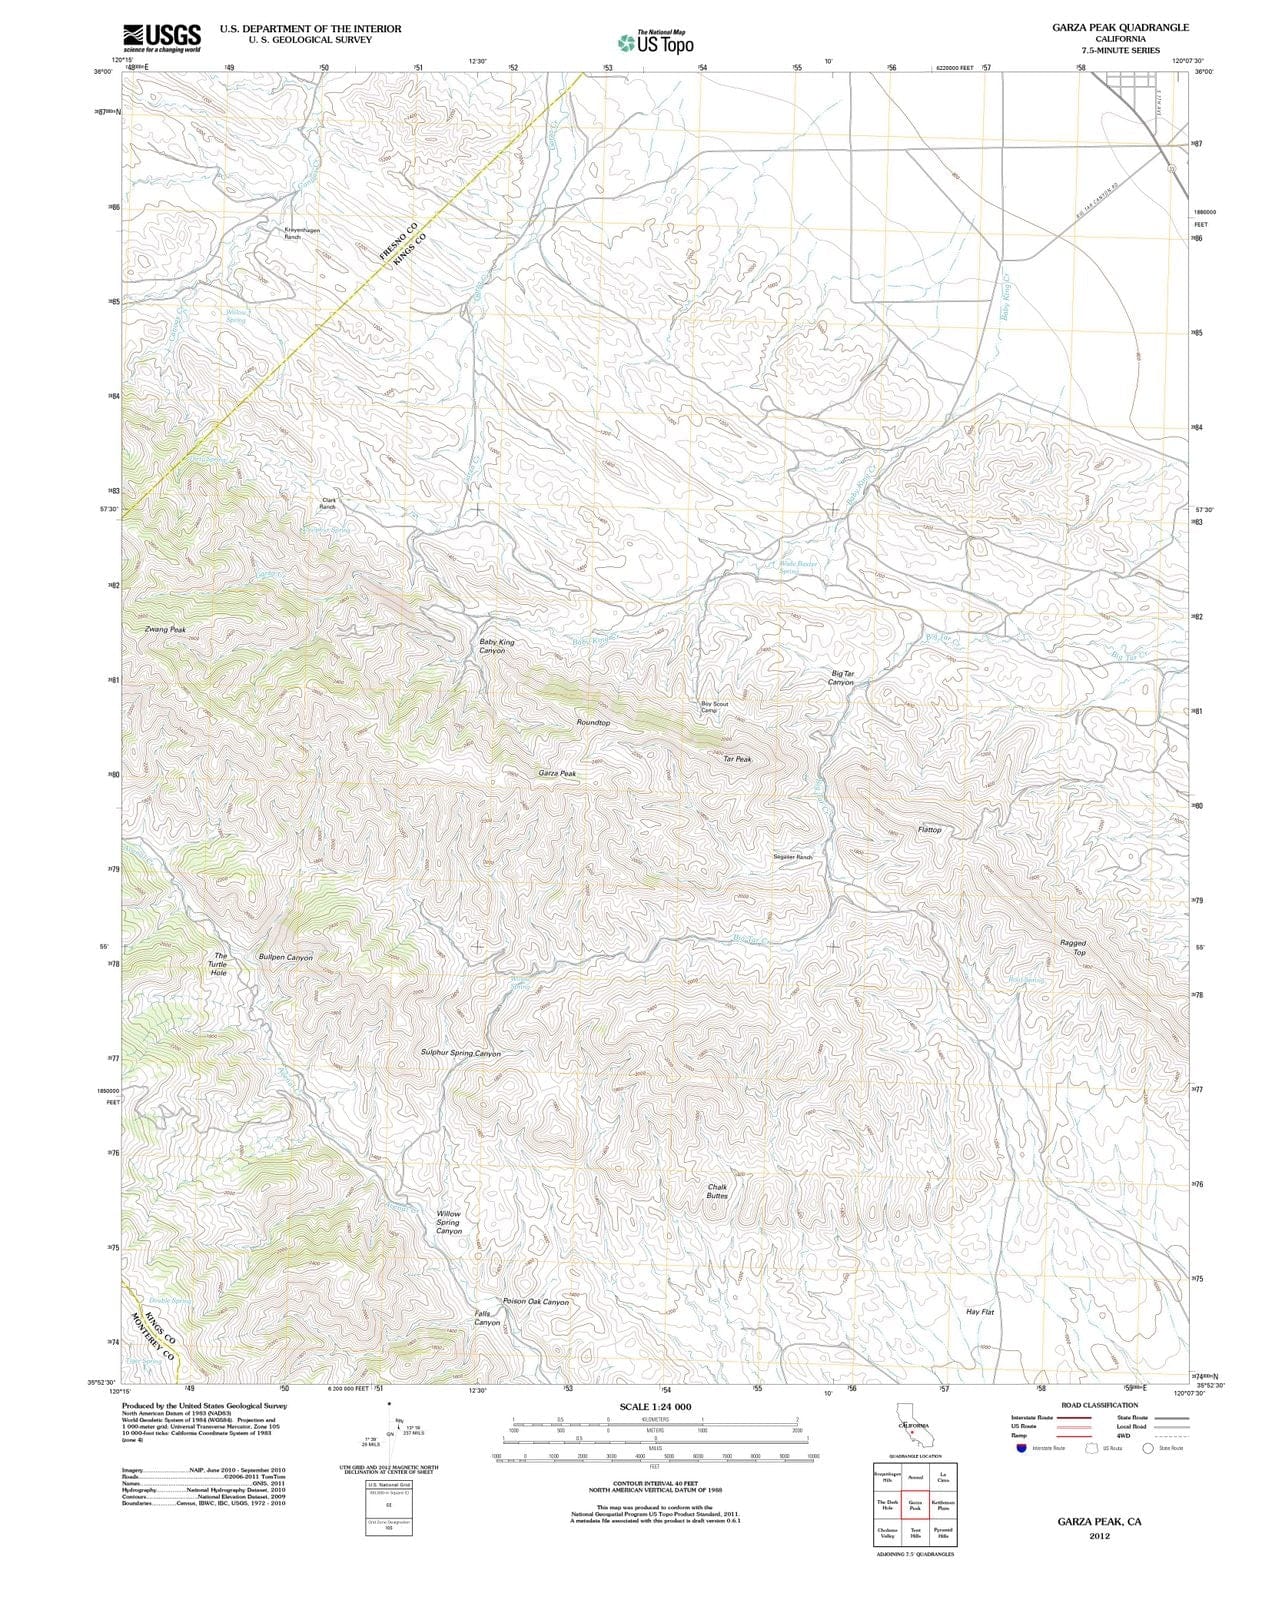 2012 Garza Peak, CA - California - USGS Topographic Map